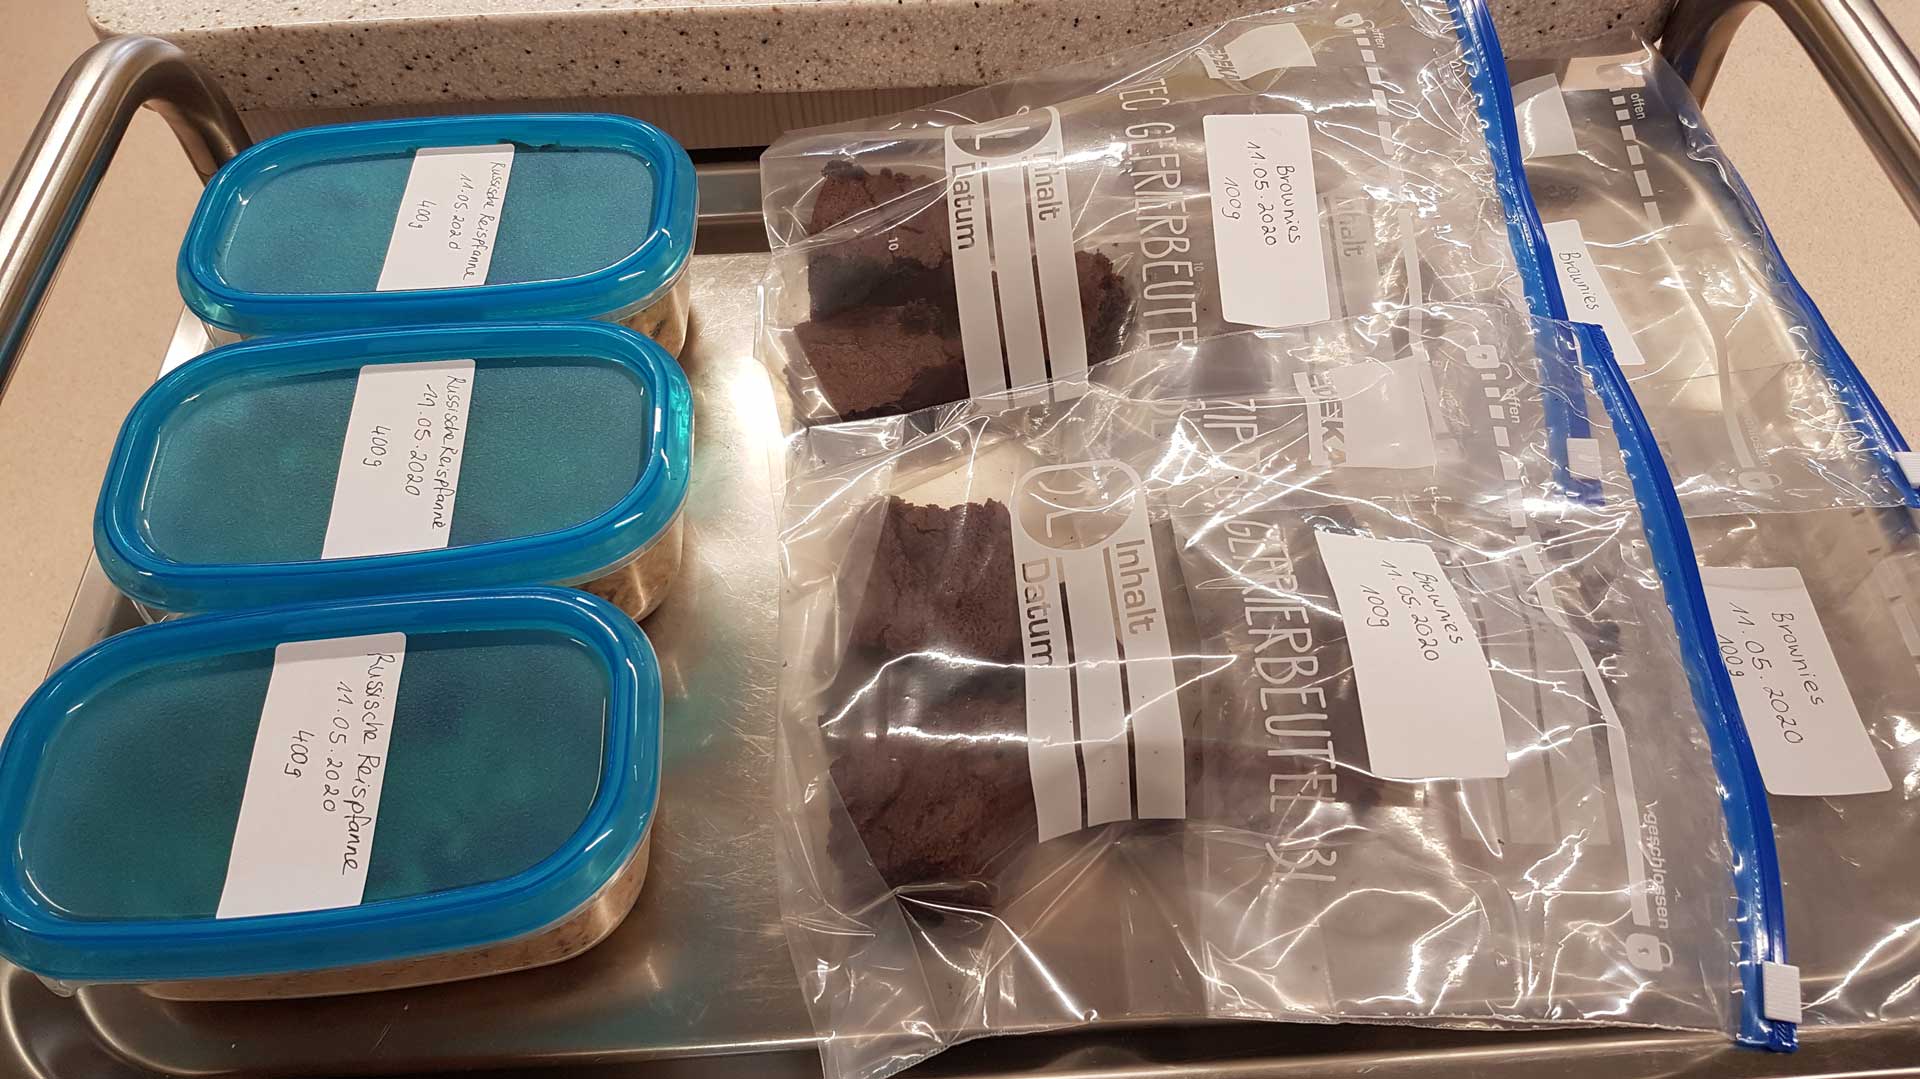 Brownies und Reispfannnen waren zum Beispiel ordentlich verpackt eines der Kochergebnisse der Prüflinge (Foto: Wolfgang Brey)